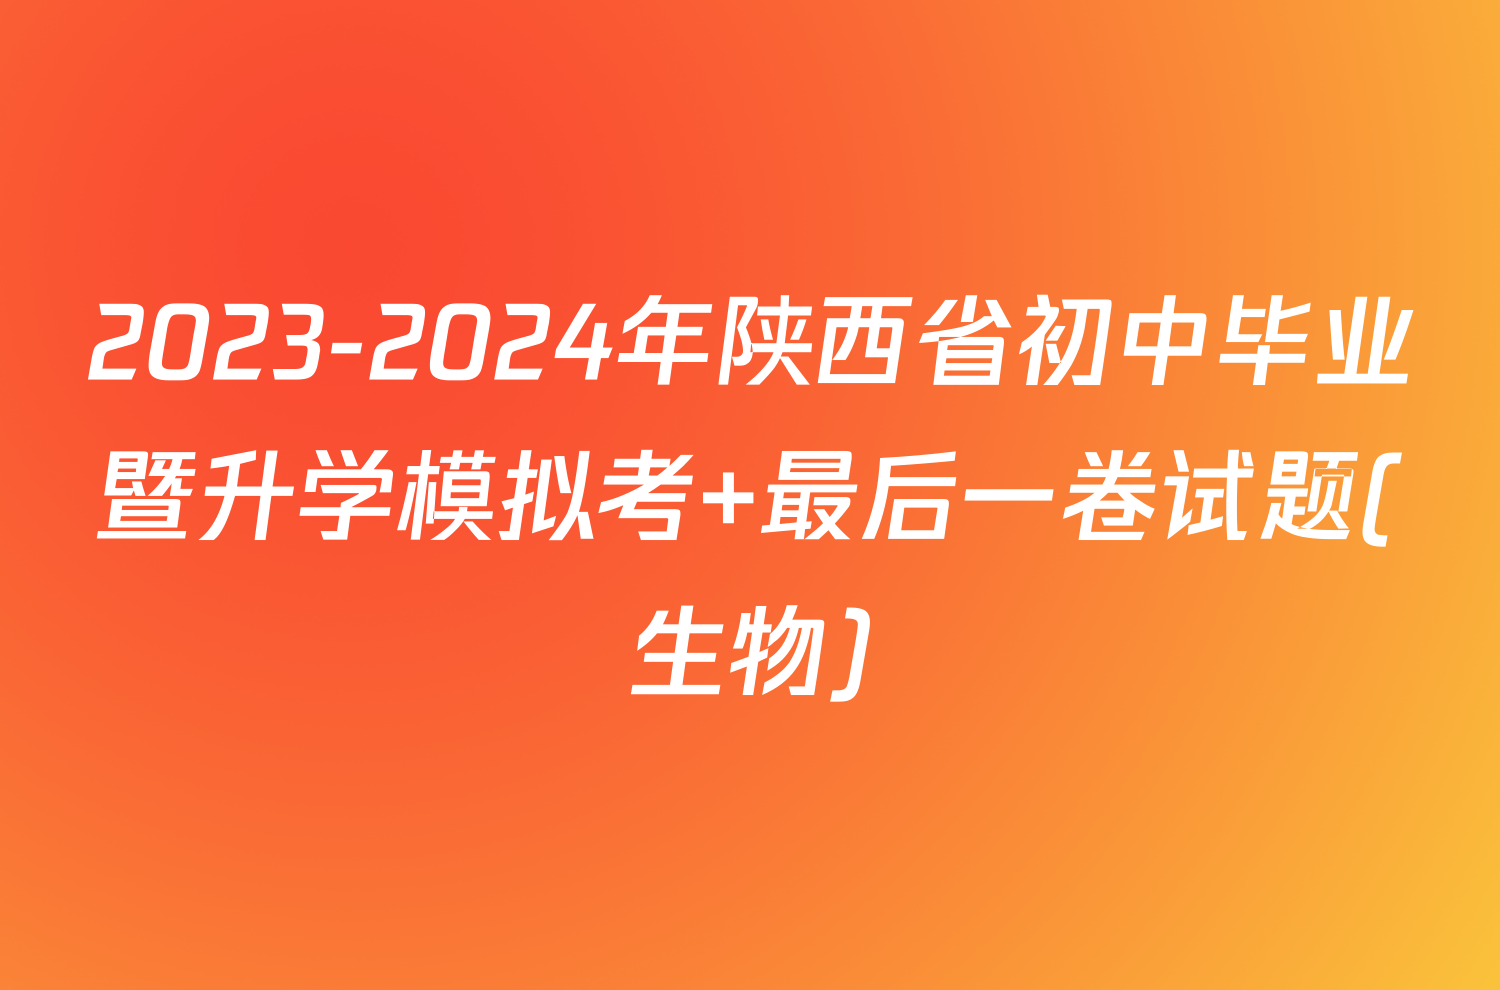 2023-2024年陕西省初中毕业暨升学模拟考 最后一卷试题(生物)